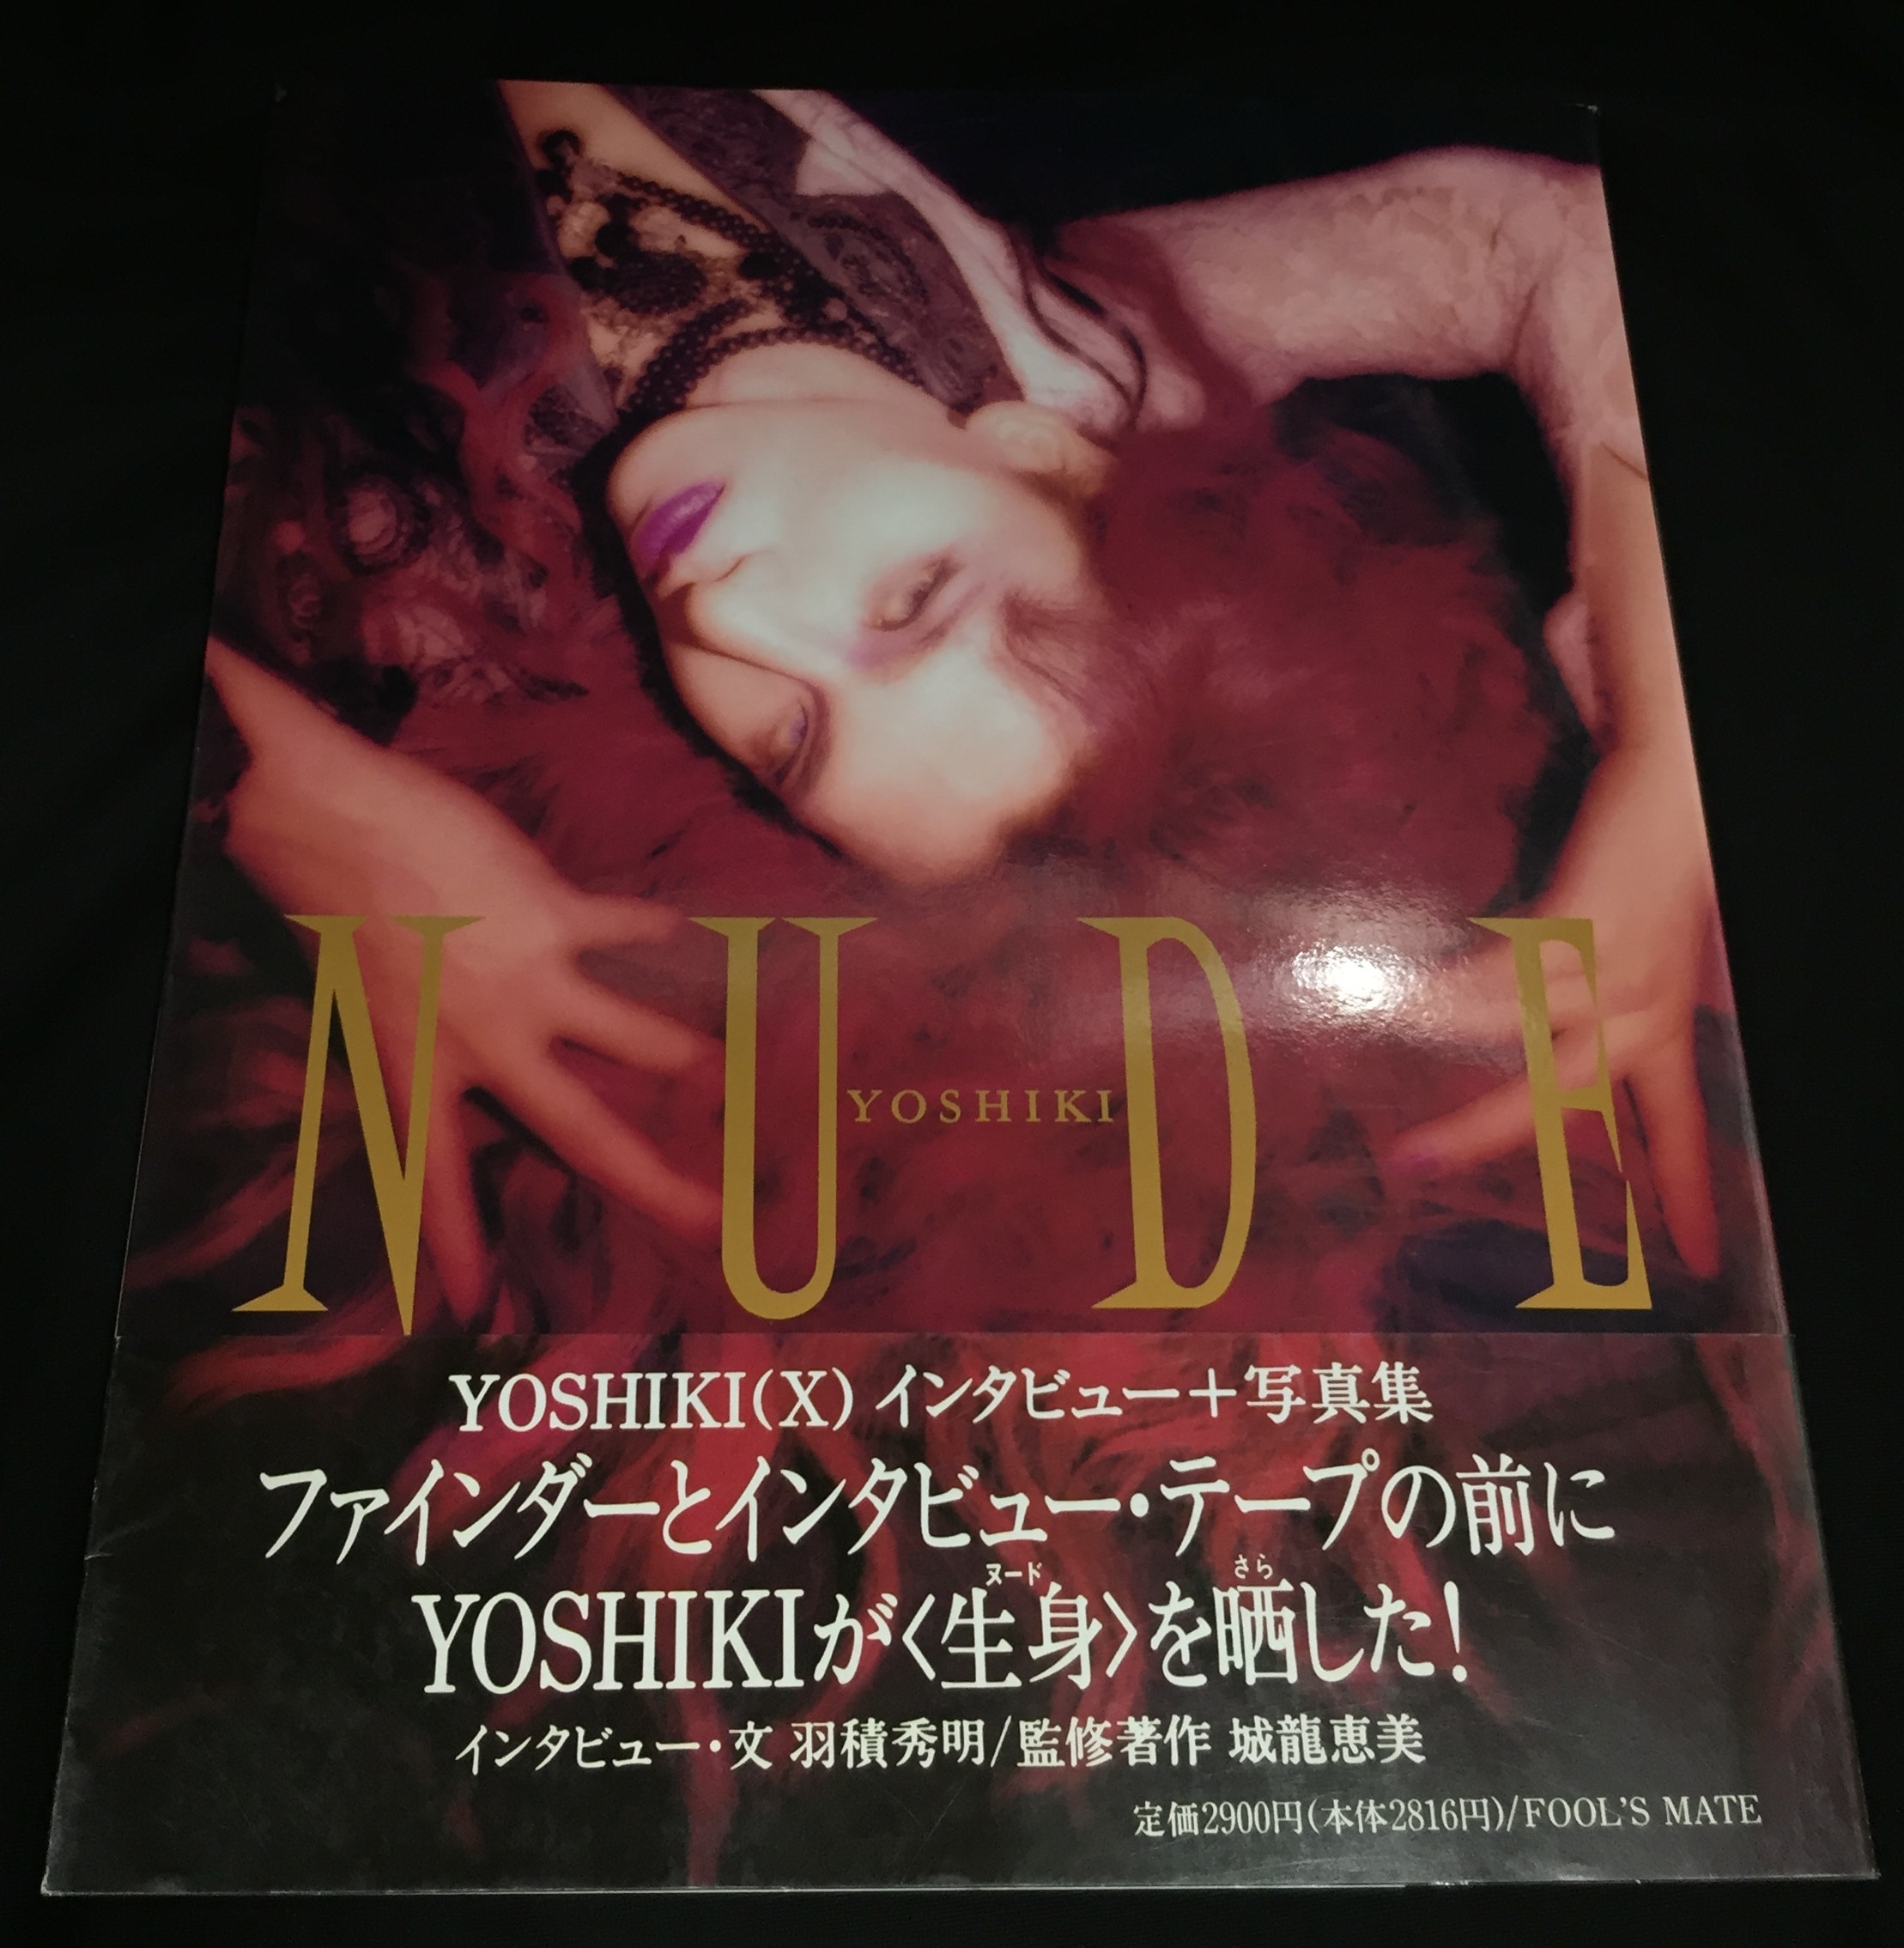 X JAPAN YOSHIKI インタビュー+写真集 NUDE | ありある | まんだらけ 